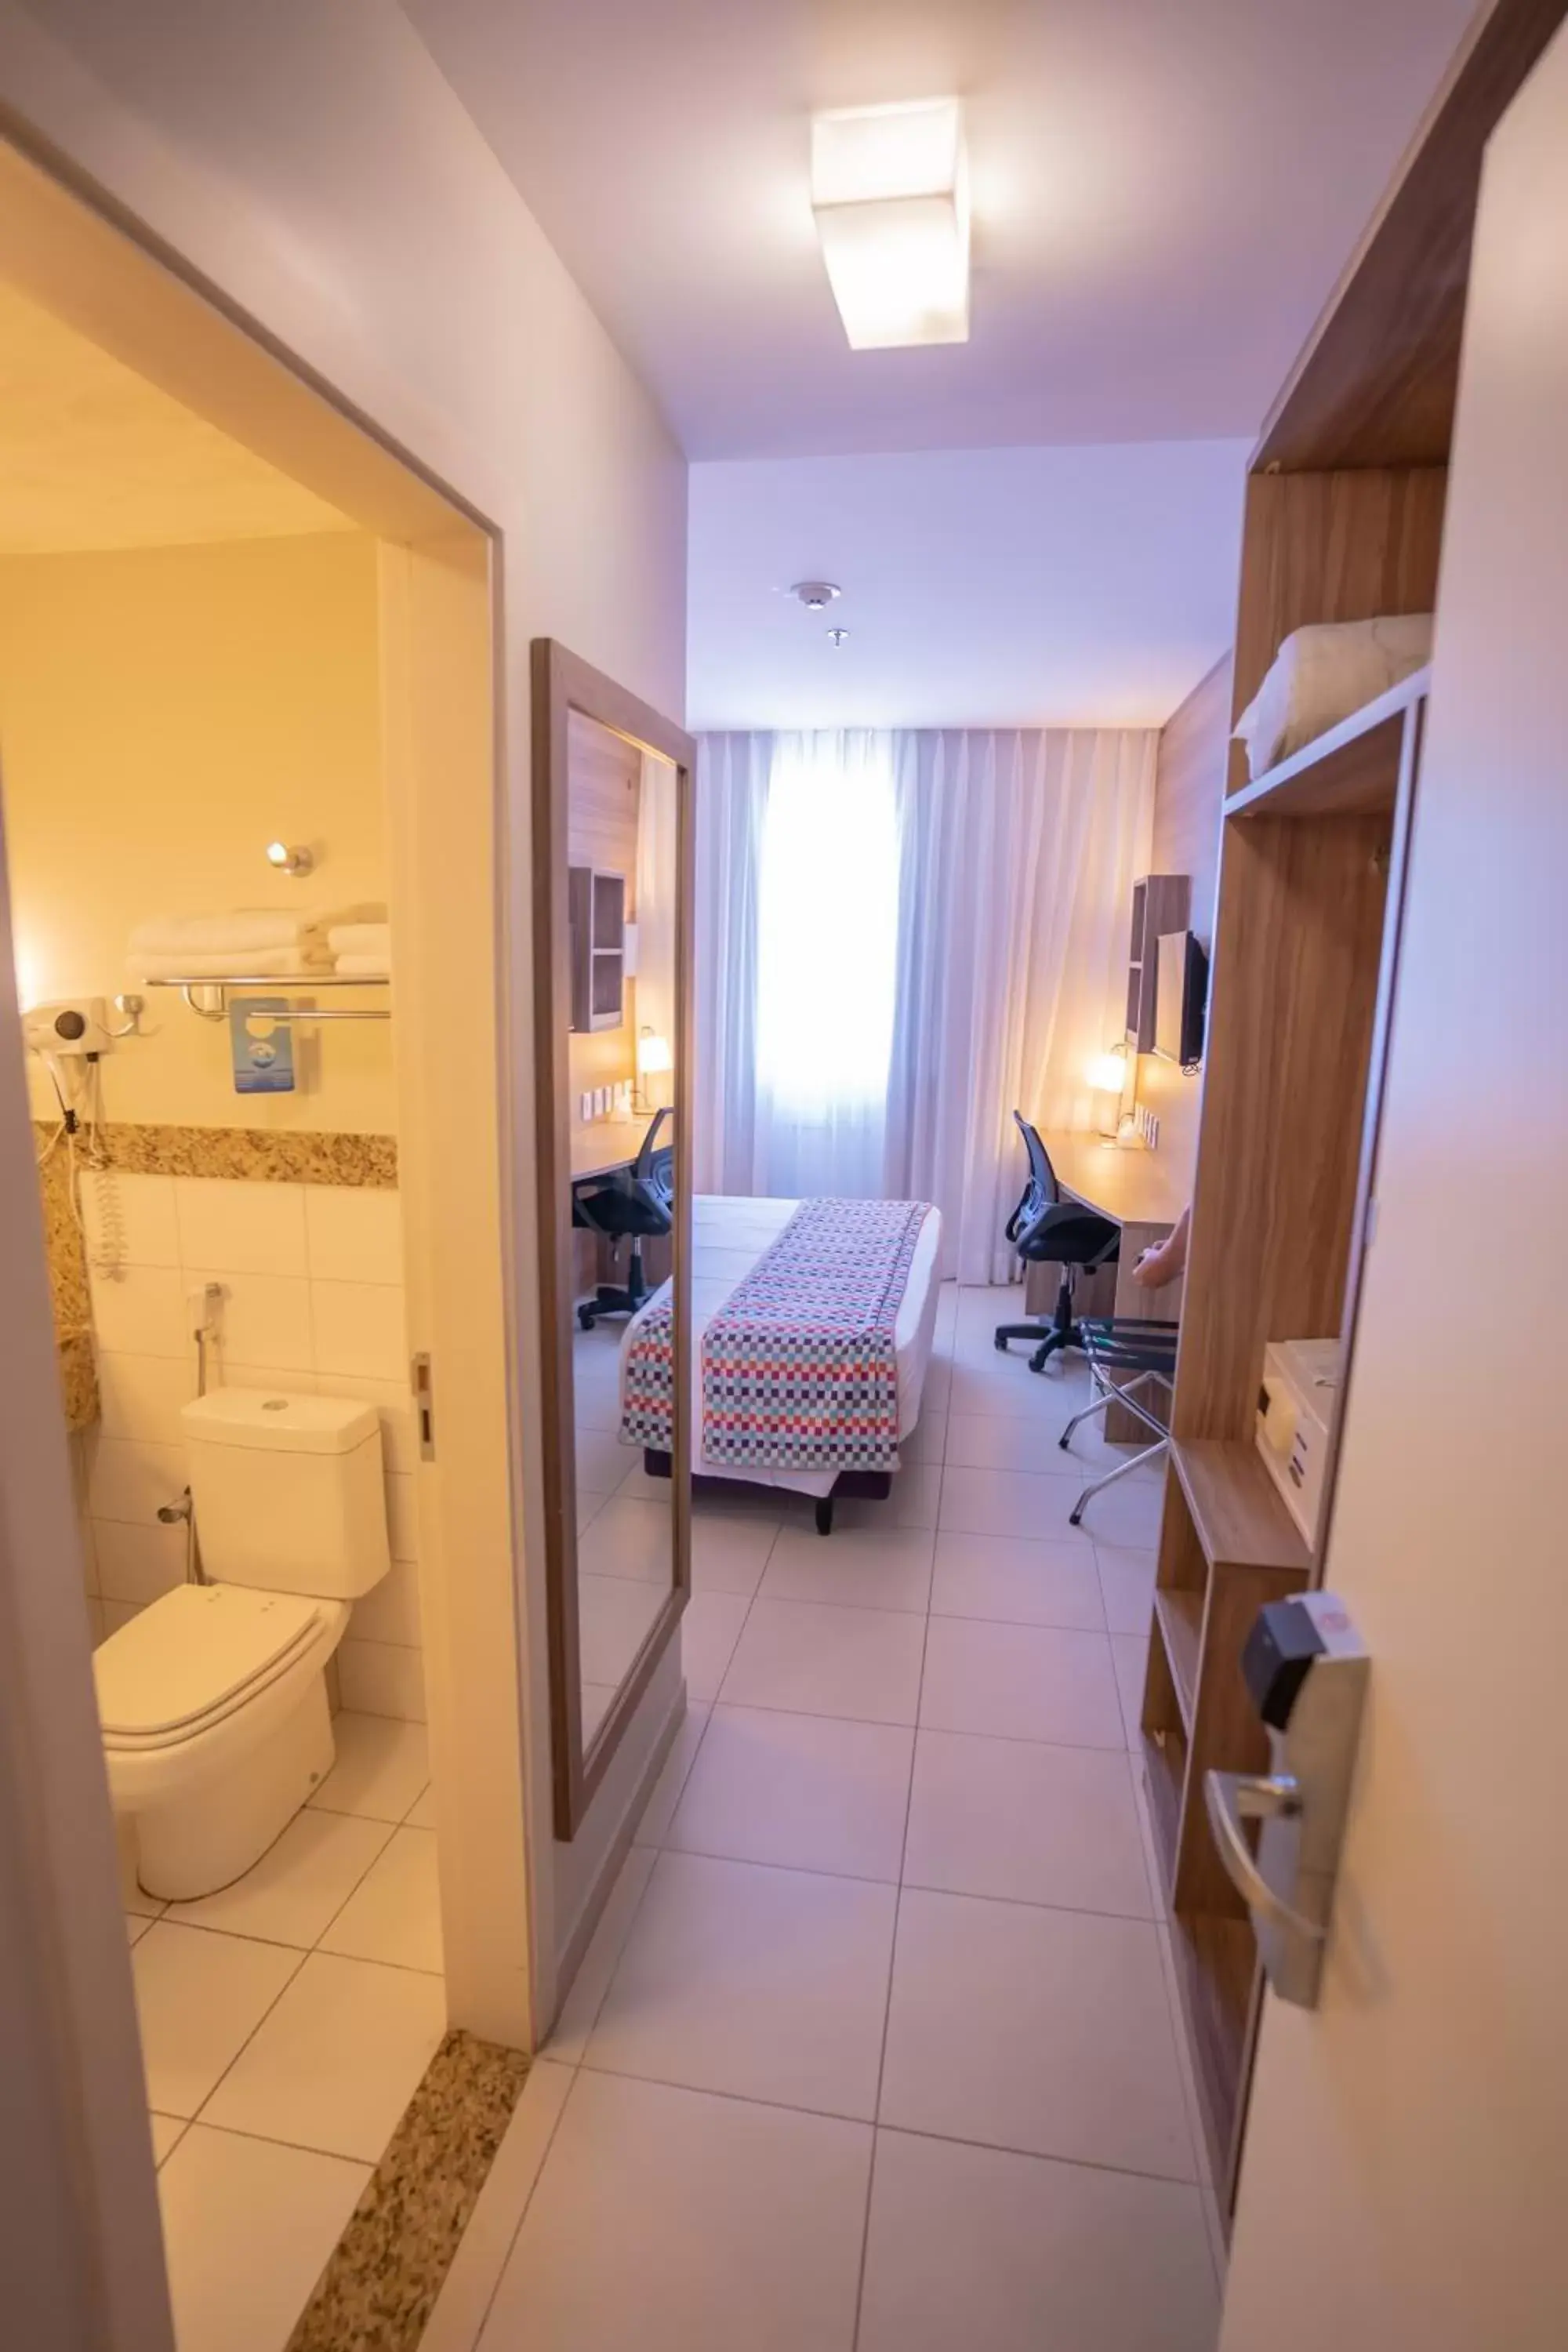 Bedroom, Bathroom in Comfort Hotel Santos